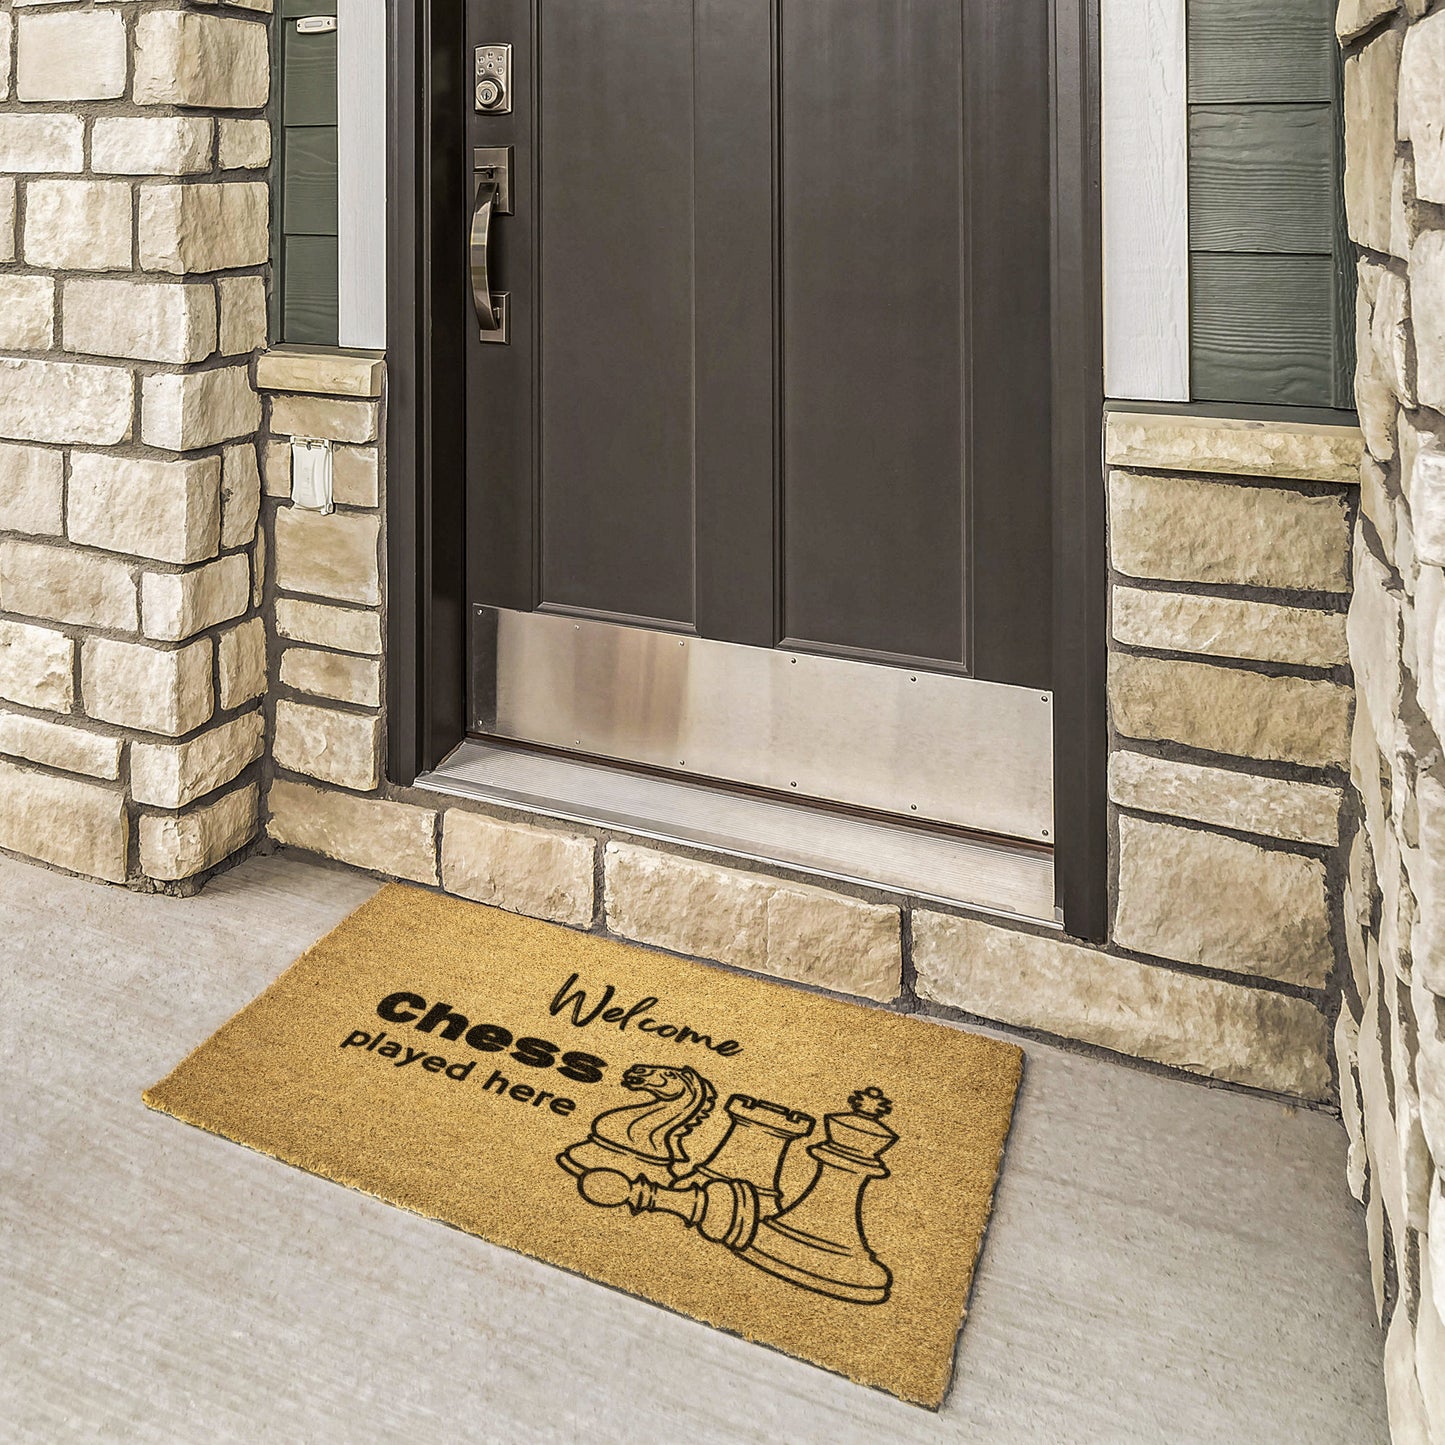 Chess Game Doormat • Entry Way Doormat • Outdoor Doormat • Welcome Doormat